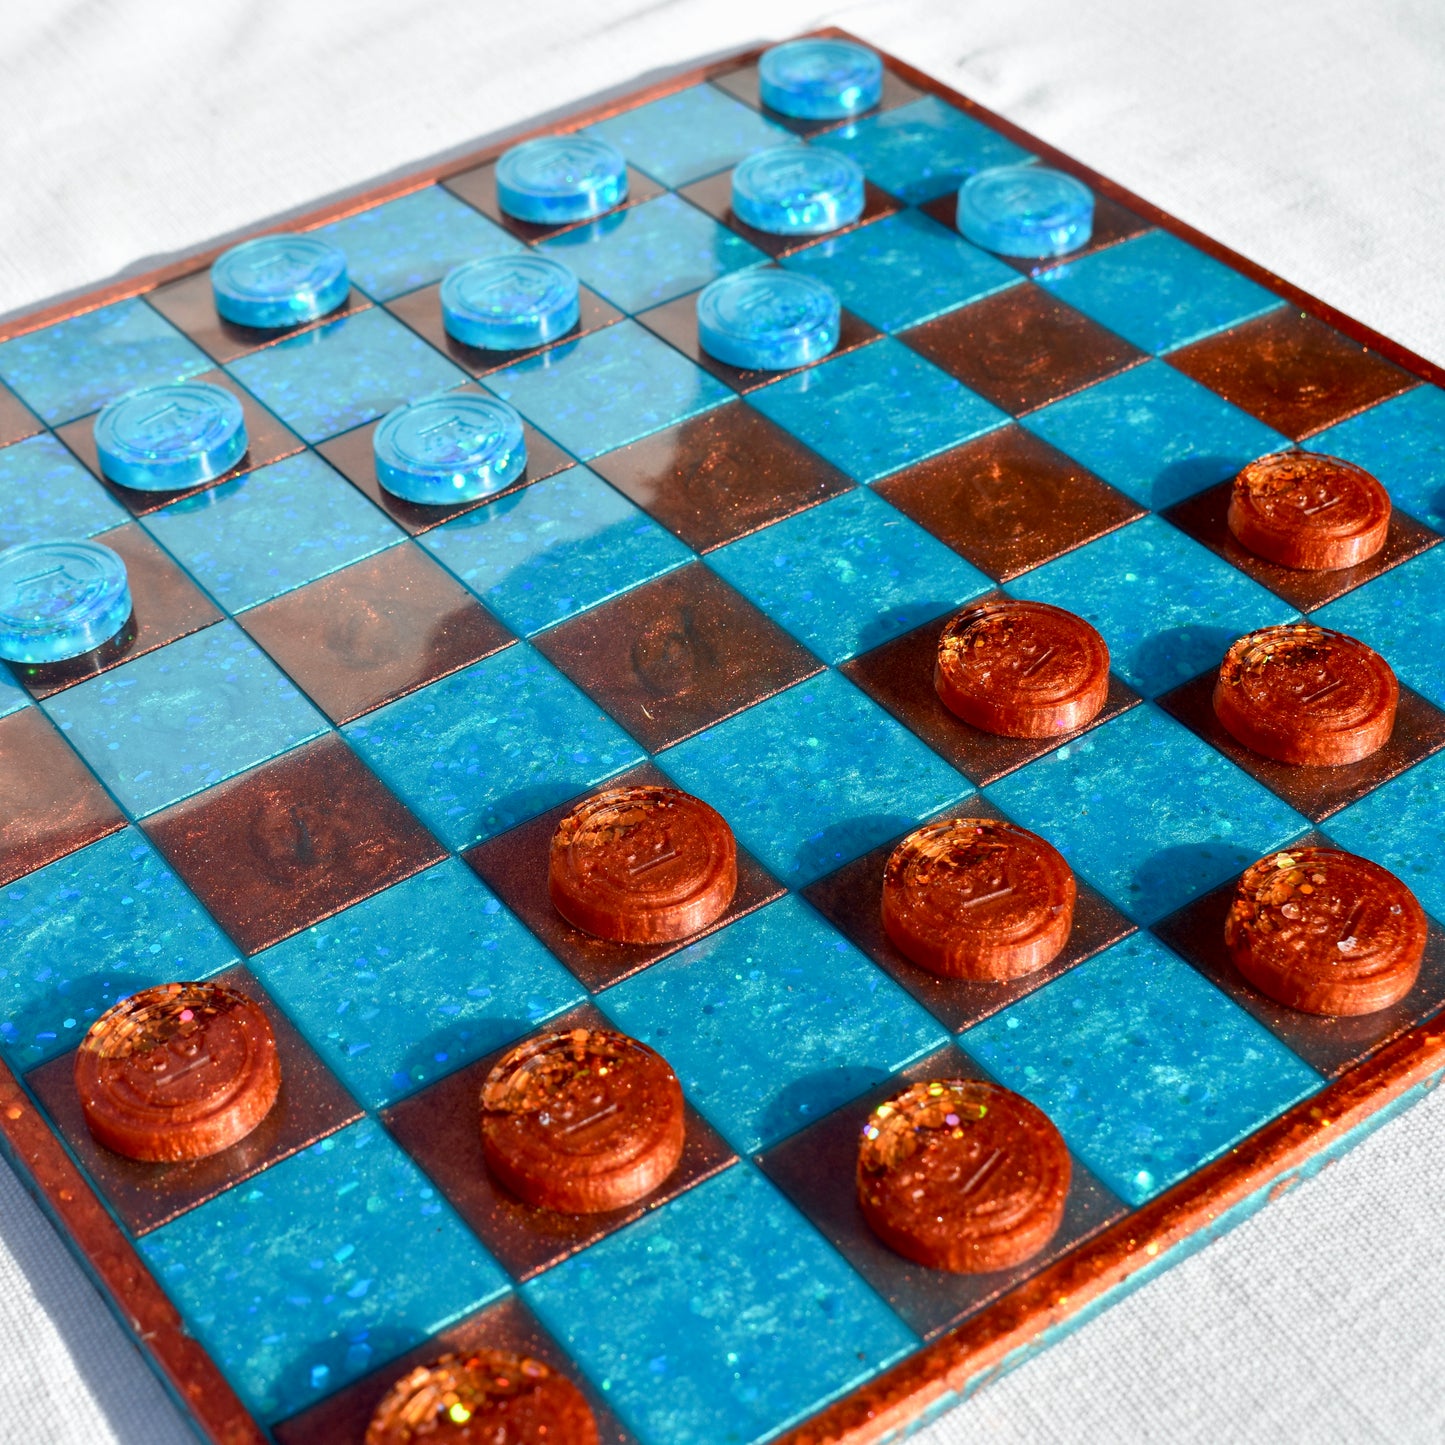 Premium Chess & Checkers Set • Sleek Custom Chess & Checkers Set